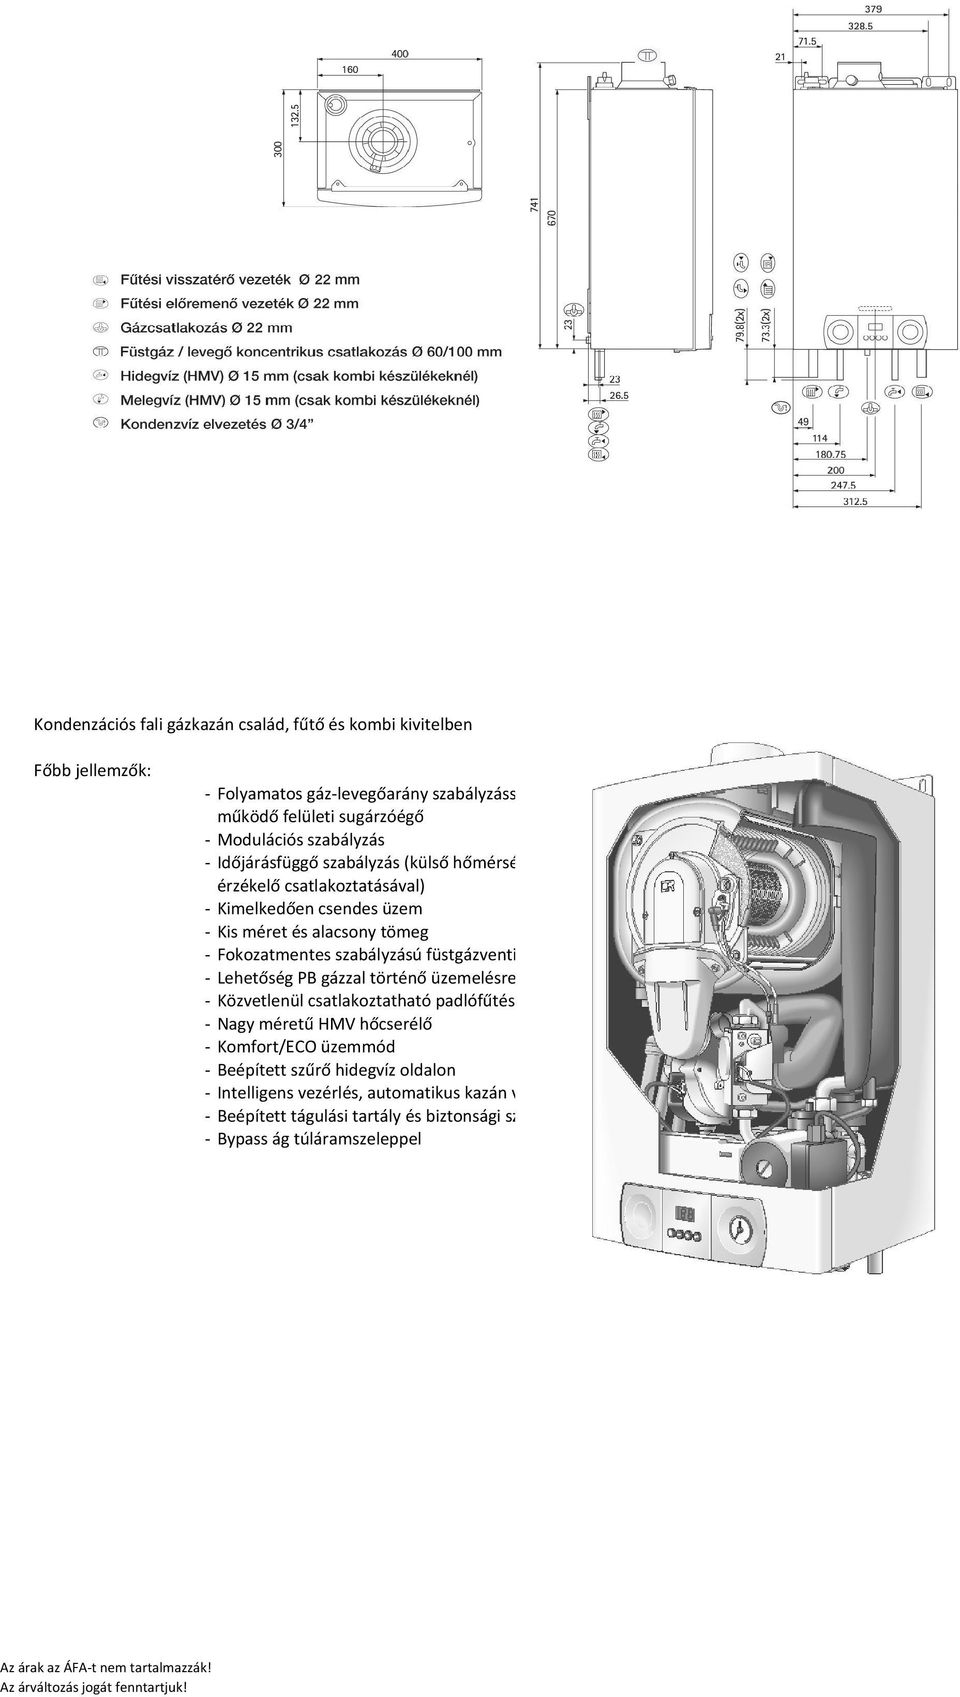 szabályzású füstgázventilátor - Lehetőség PB gázzal történő üzemelésre - Közvetlenül csatlakoztatható padlófűtésre - Nagy méretű HMV hőcserélő - Komfort/ECO